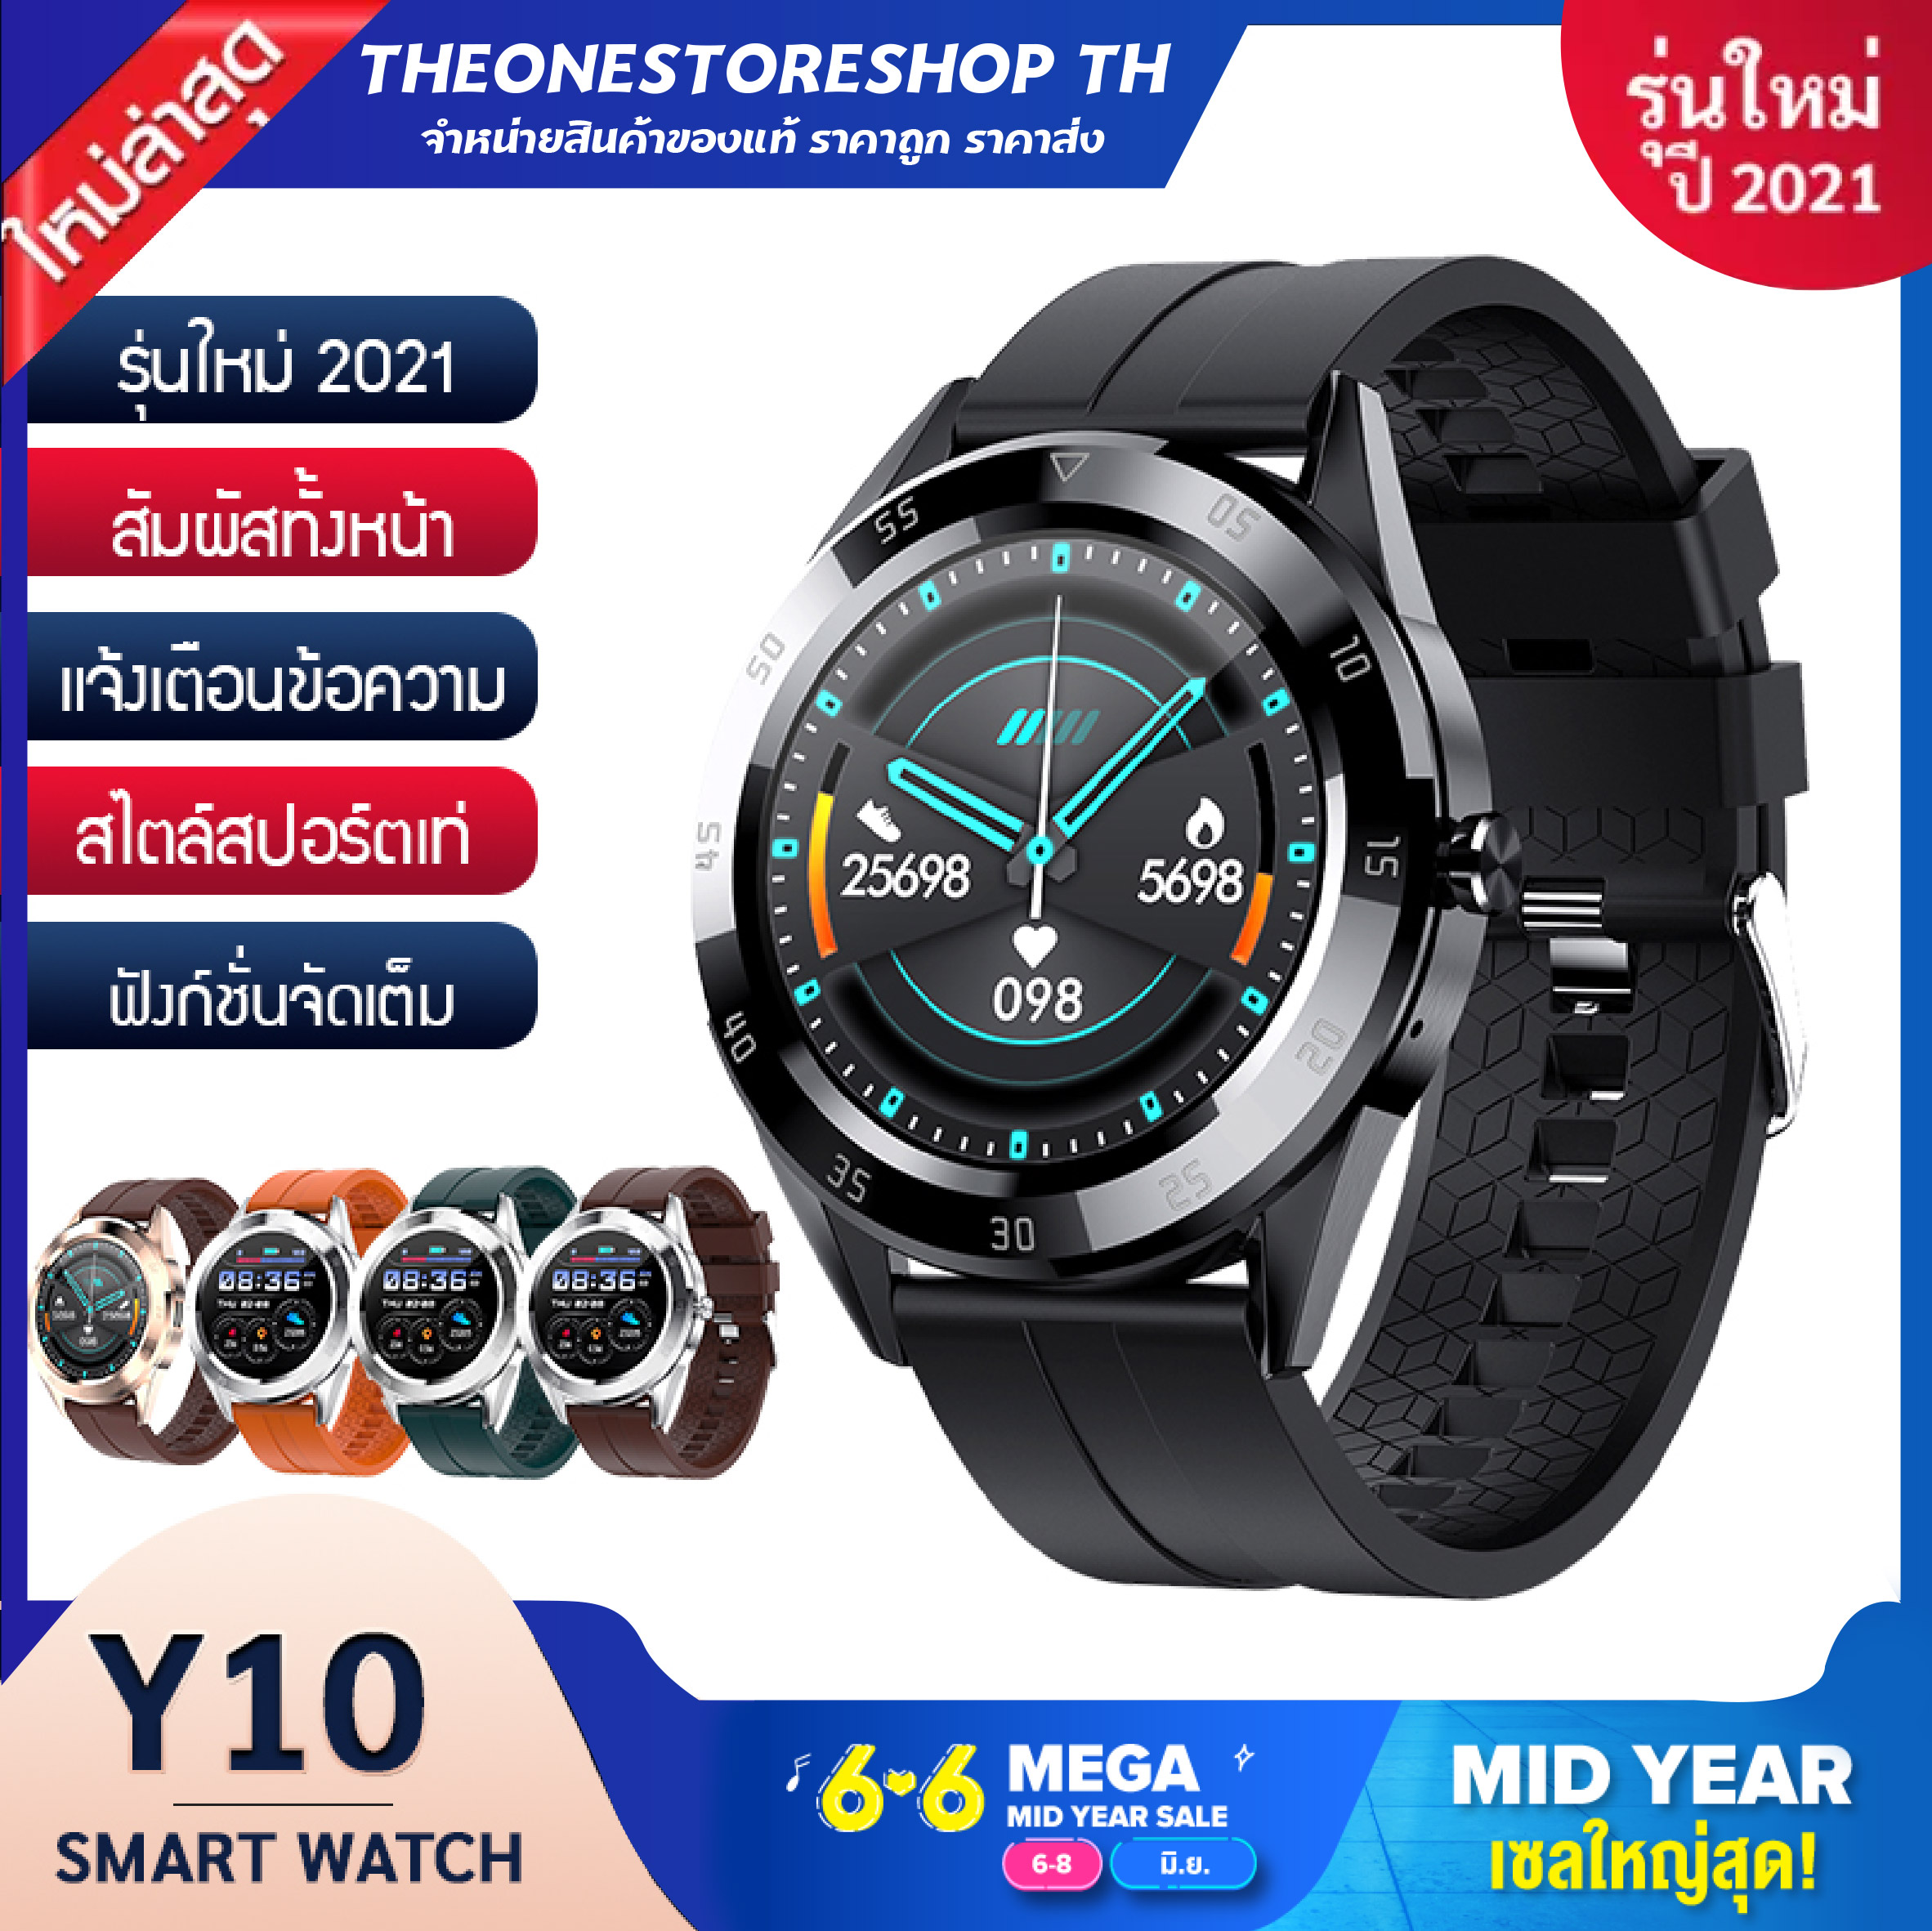 [ส่งไว! 2-3 วันในไทย] smart watch Y10 ใหม่ล่าสุด! เมนูไทย แจ้งเตือนภาษาไทย ทัสกรีนหน้าจอ ตั้งรูปหน้าจอ นาฬิกาอัจฉริยะ (ภาษาไทย) วัดชีพจร ความดัน นับก้าว มีประกัน ของแท้ นาฬิกาข้อมือ